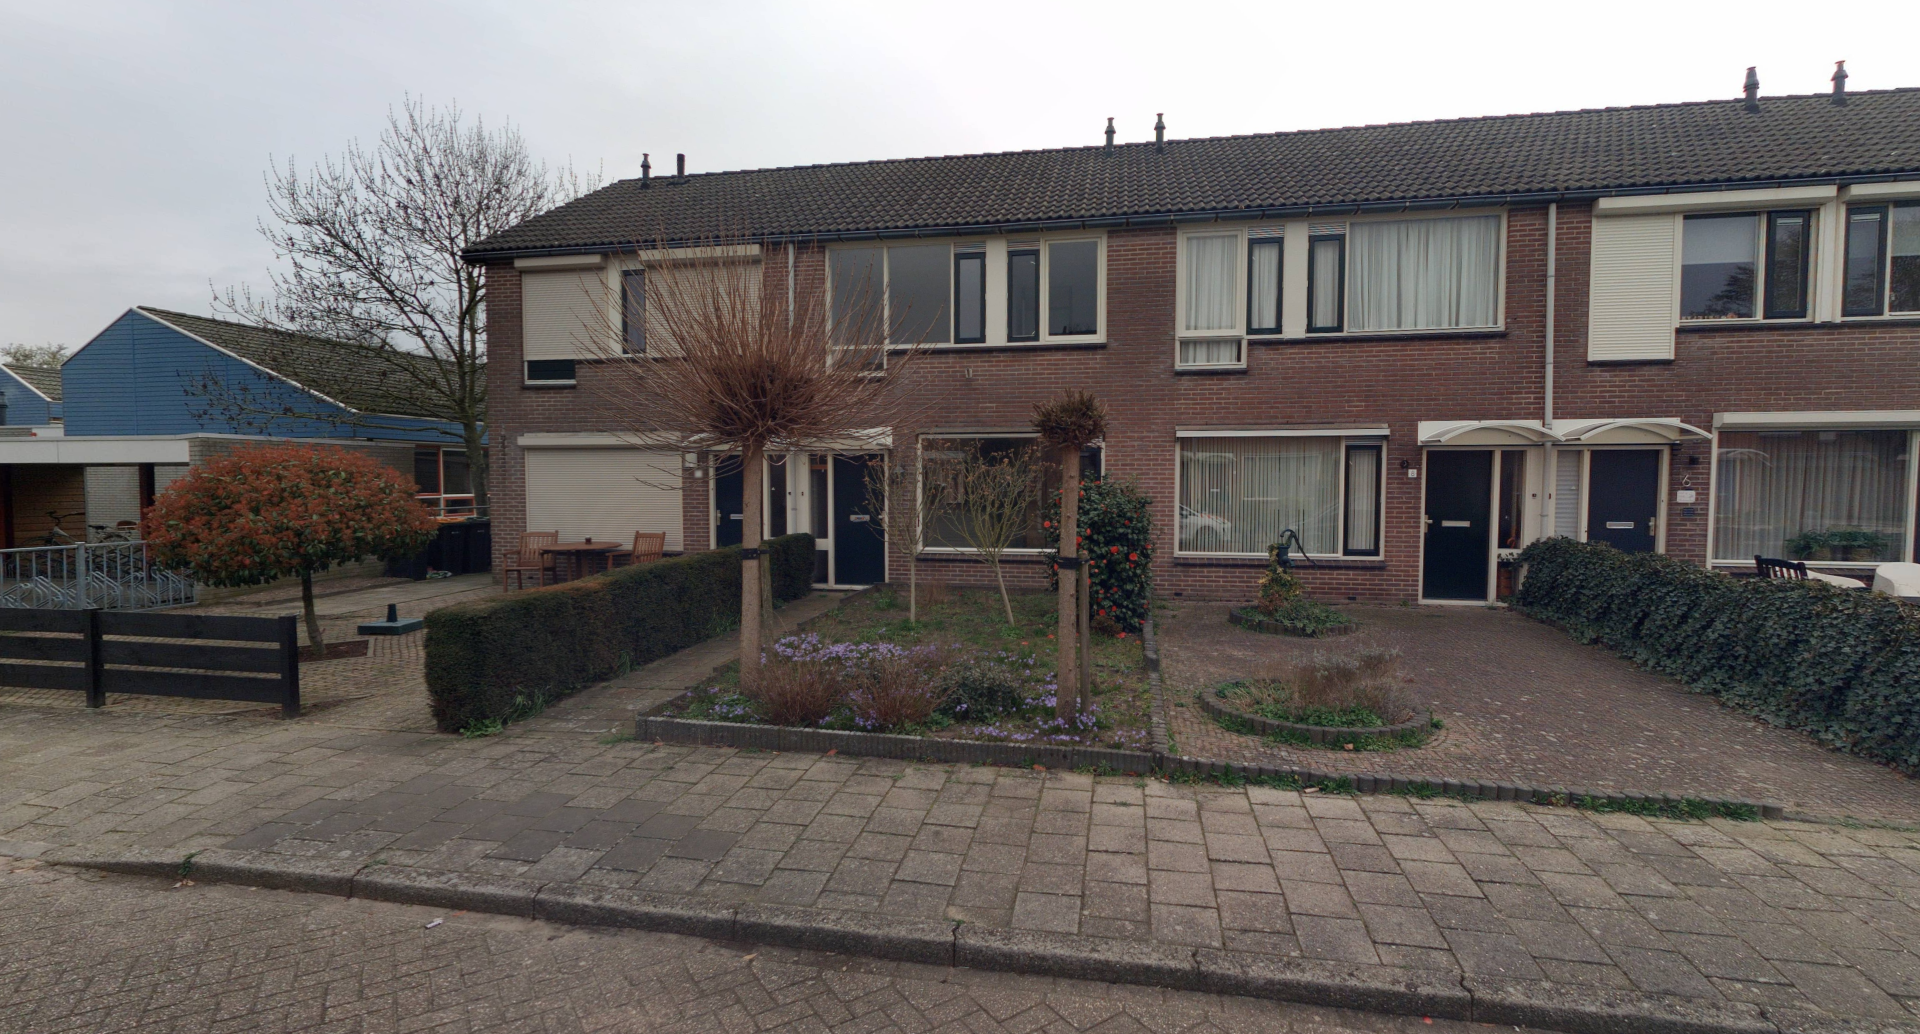 Nolensstraat 10, 7141 VG Groenlo, Nederland